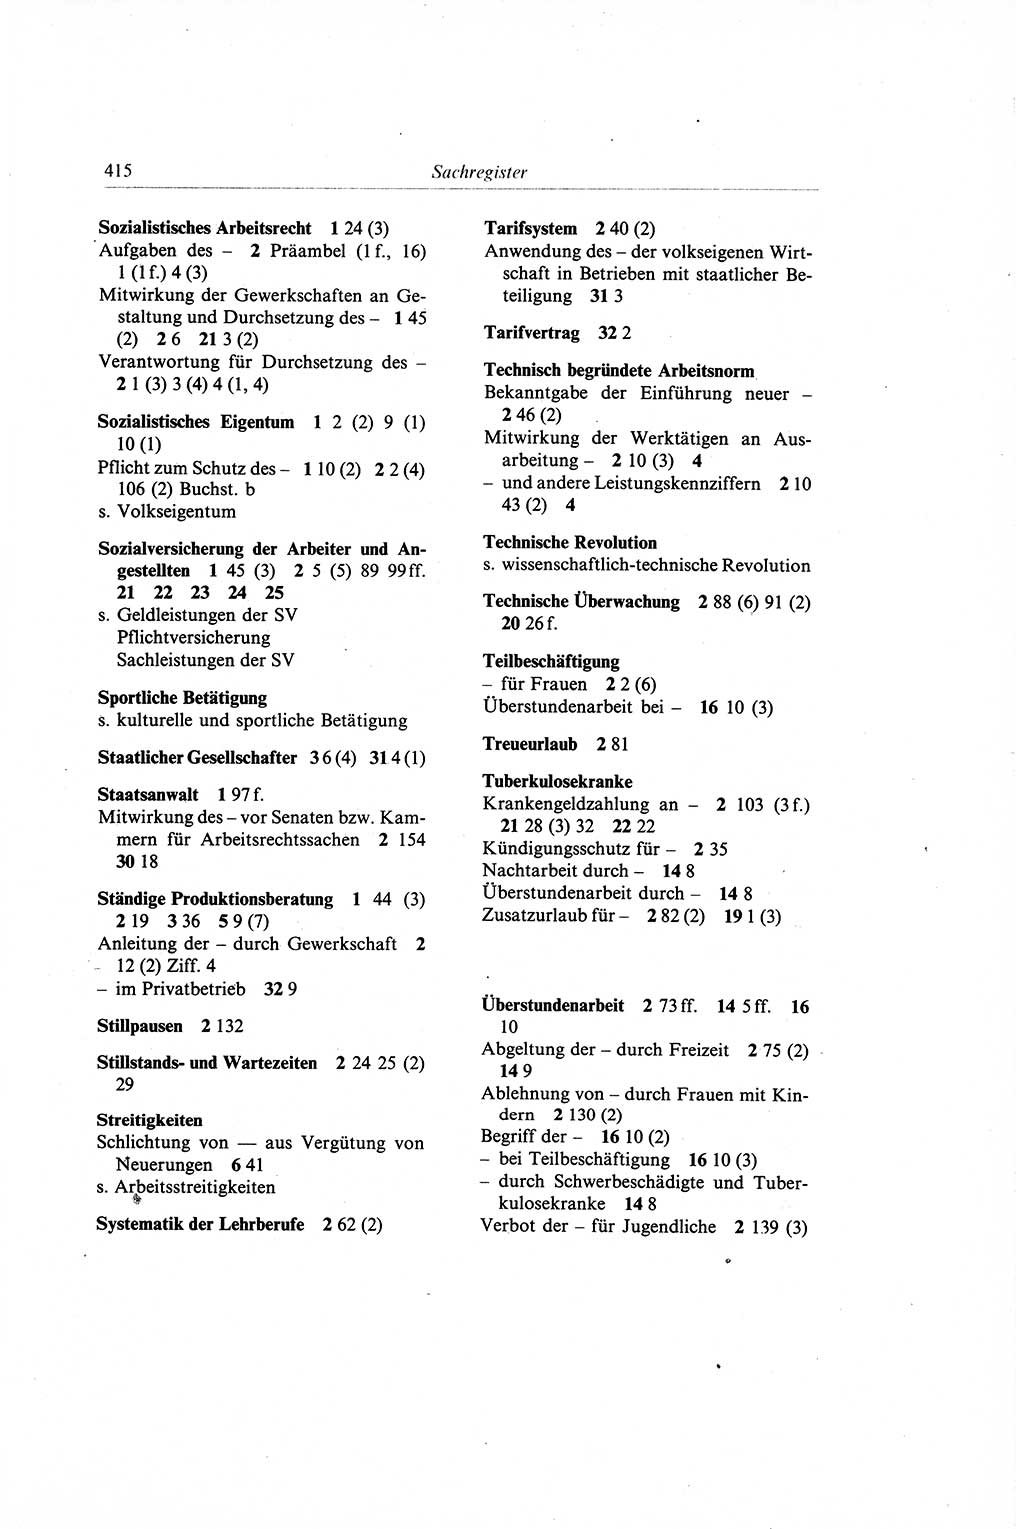 Gesetzbuch der Arbeit (GBA) und andere ausgewählte rechtliche Bestimmungen [Deutsche Demokratische Republik (DDR)] 1968, Seite 415 (GBA DDR 1968, S. 415)